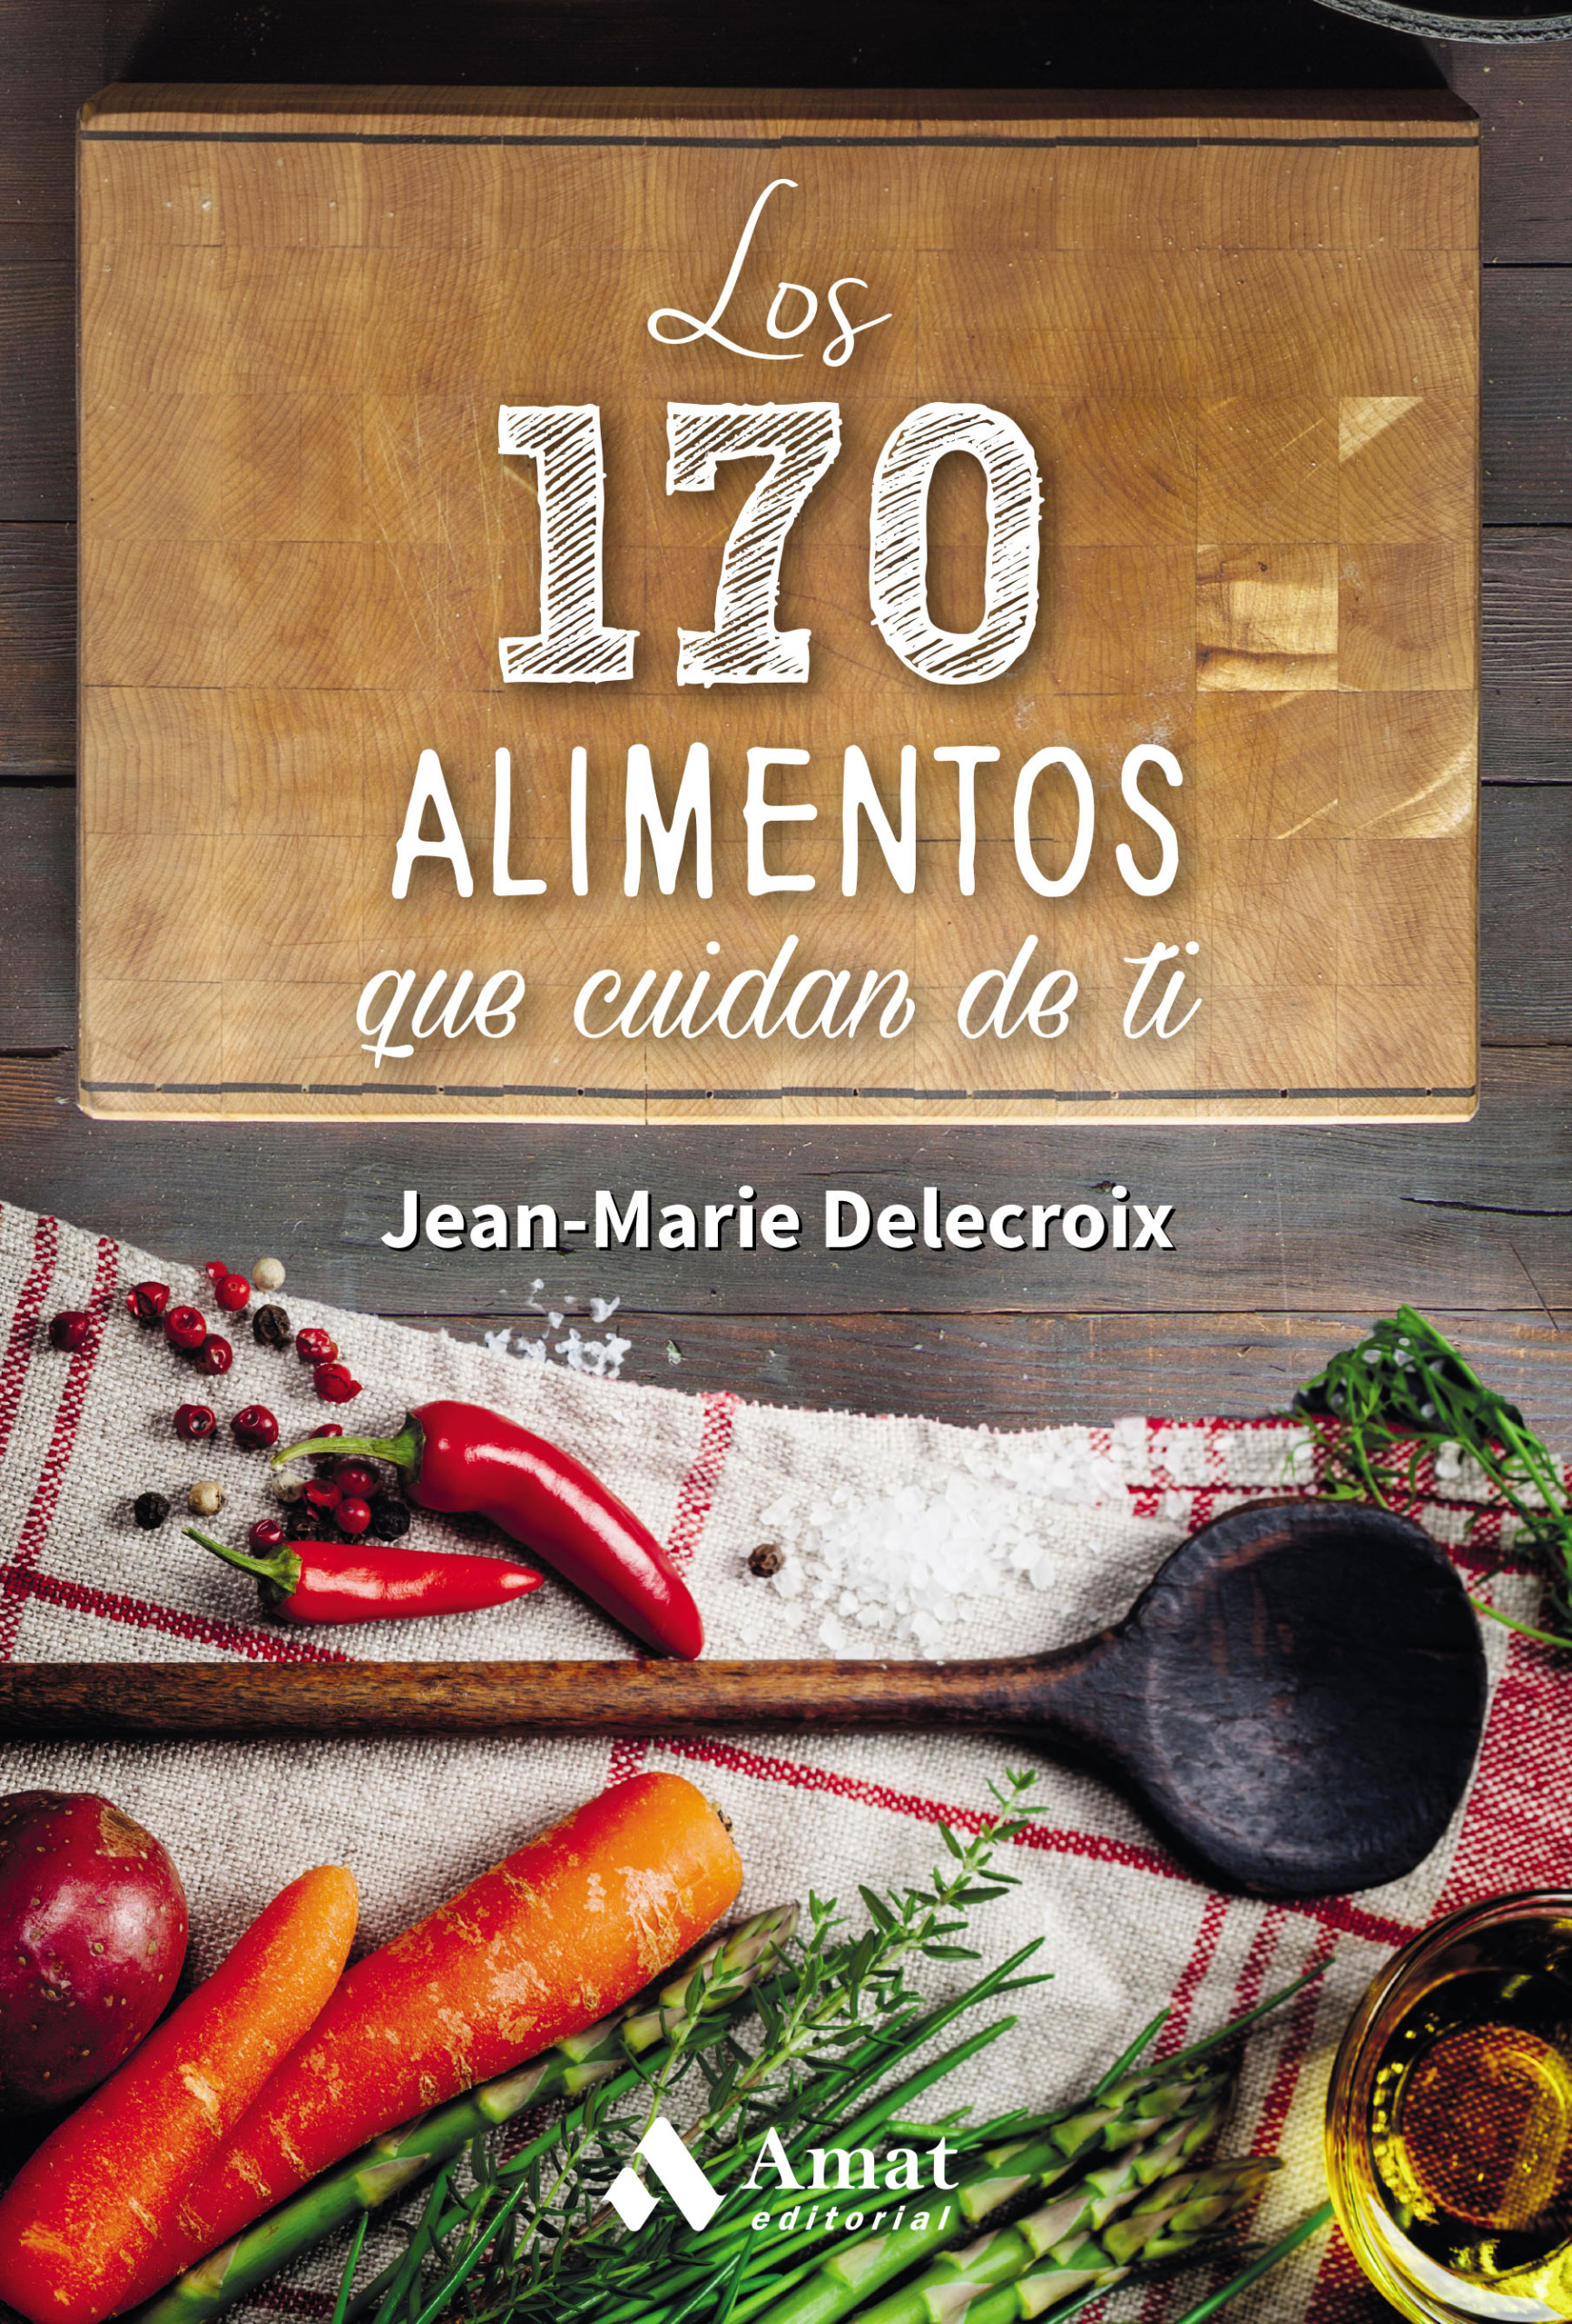 Los 170 alimentos que cuidan de ti | Jean-Marie Delacroix | Libros para vivir mejor